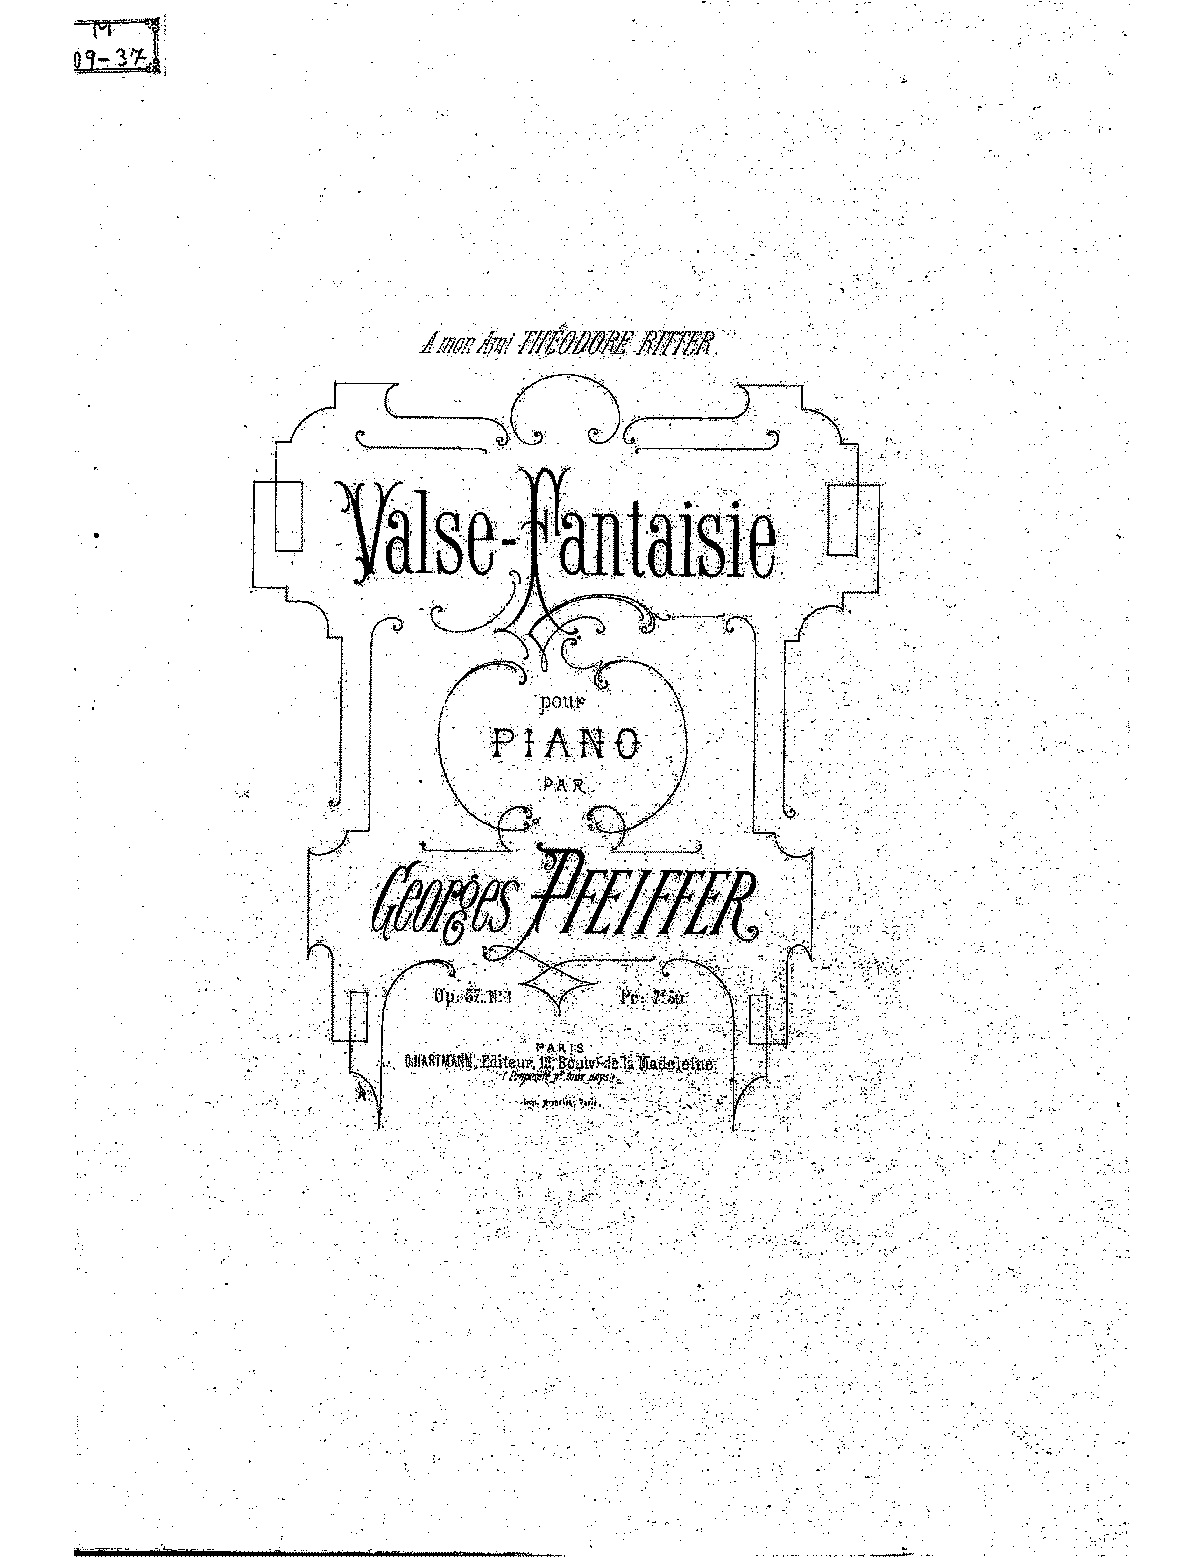 Valse-fantaisie, Op.57 No.1 (Pfeiffer, Georges Jean) - IMSLP